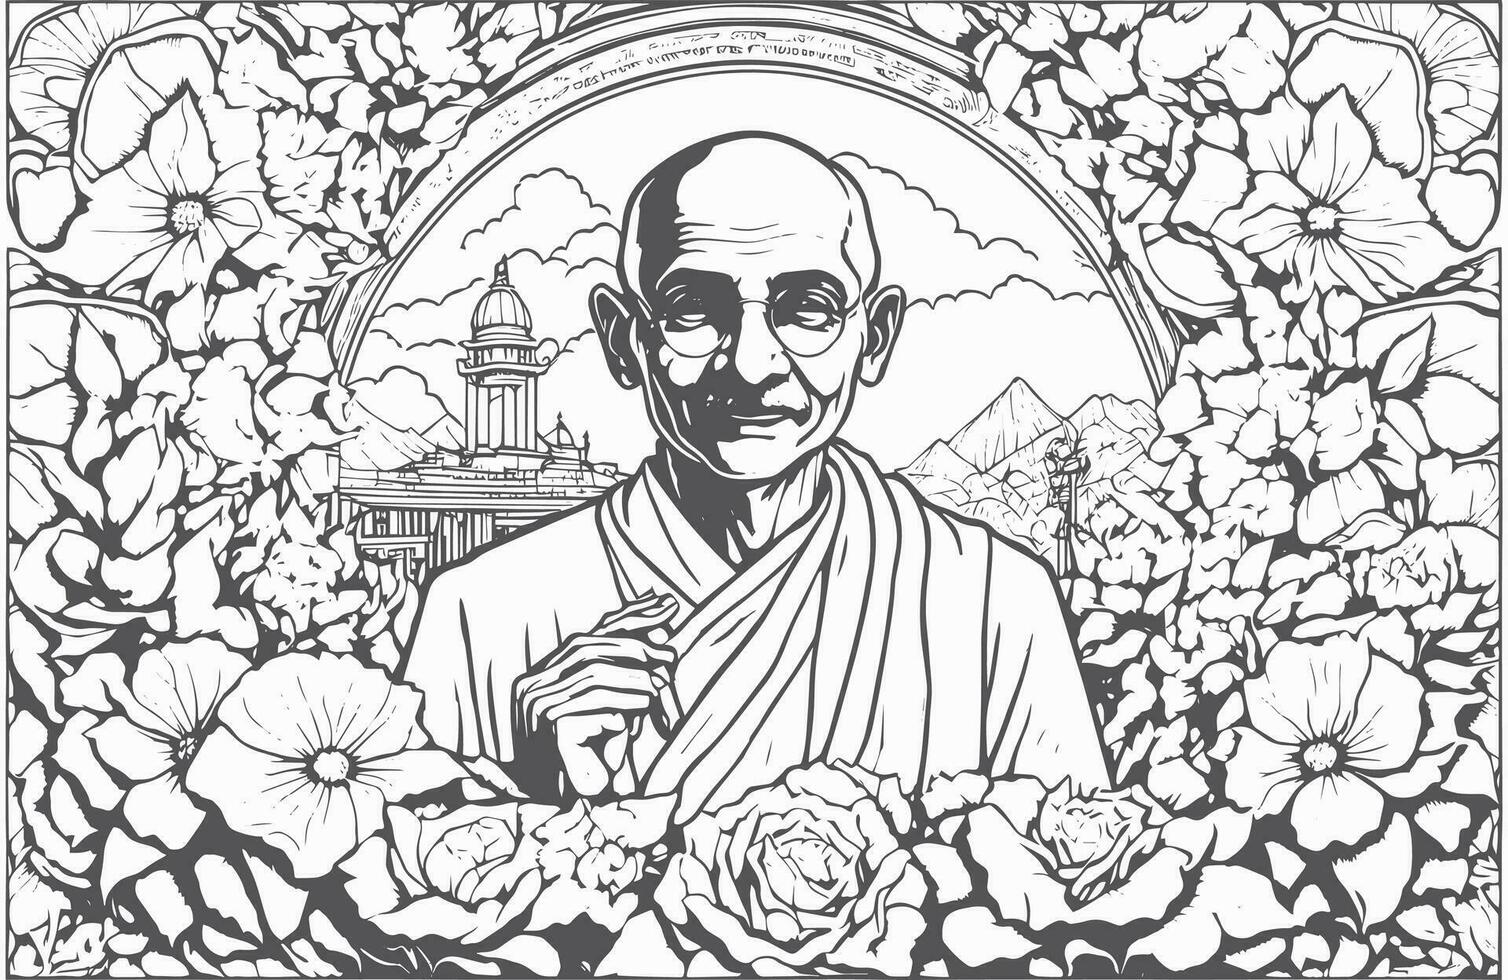 internazionale giorno di non violenza gandhi jayanti. il internazionale giorno di non violenza è segnato su 2 ottobre, il compleanno di mahatma gandhi, capo di il indiano indipendenza movimento. vettore